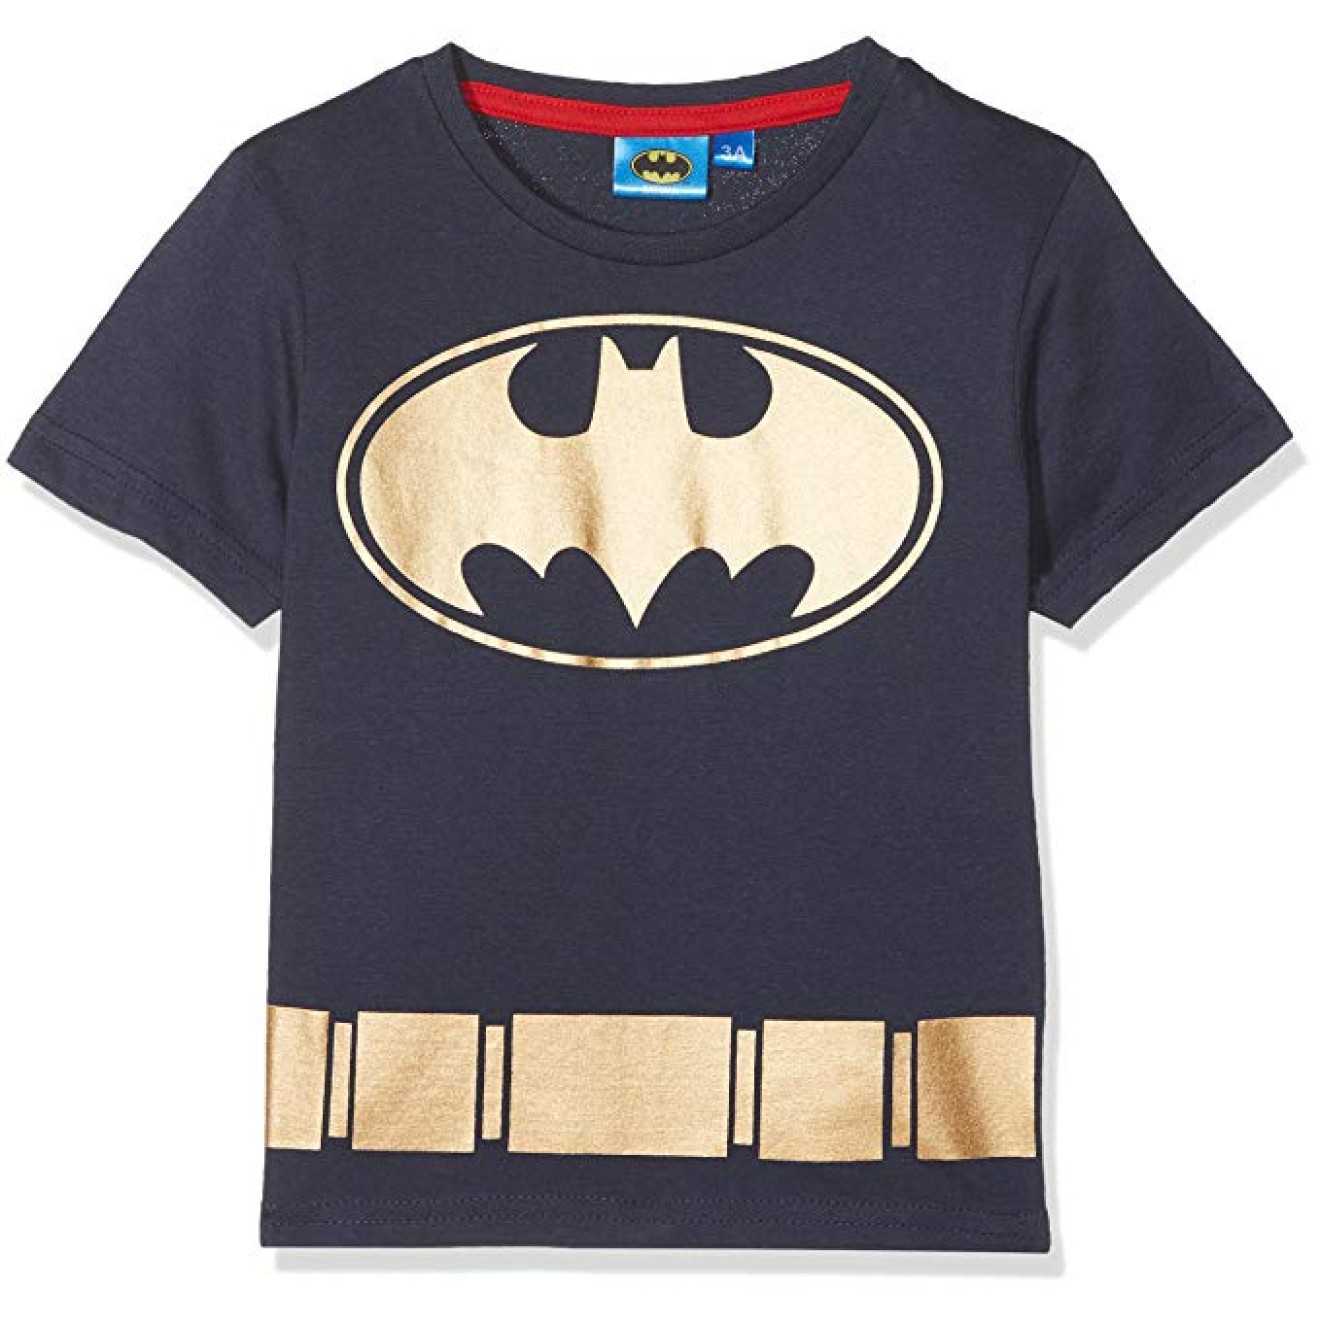 Batman - Children's t-shirt gold